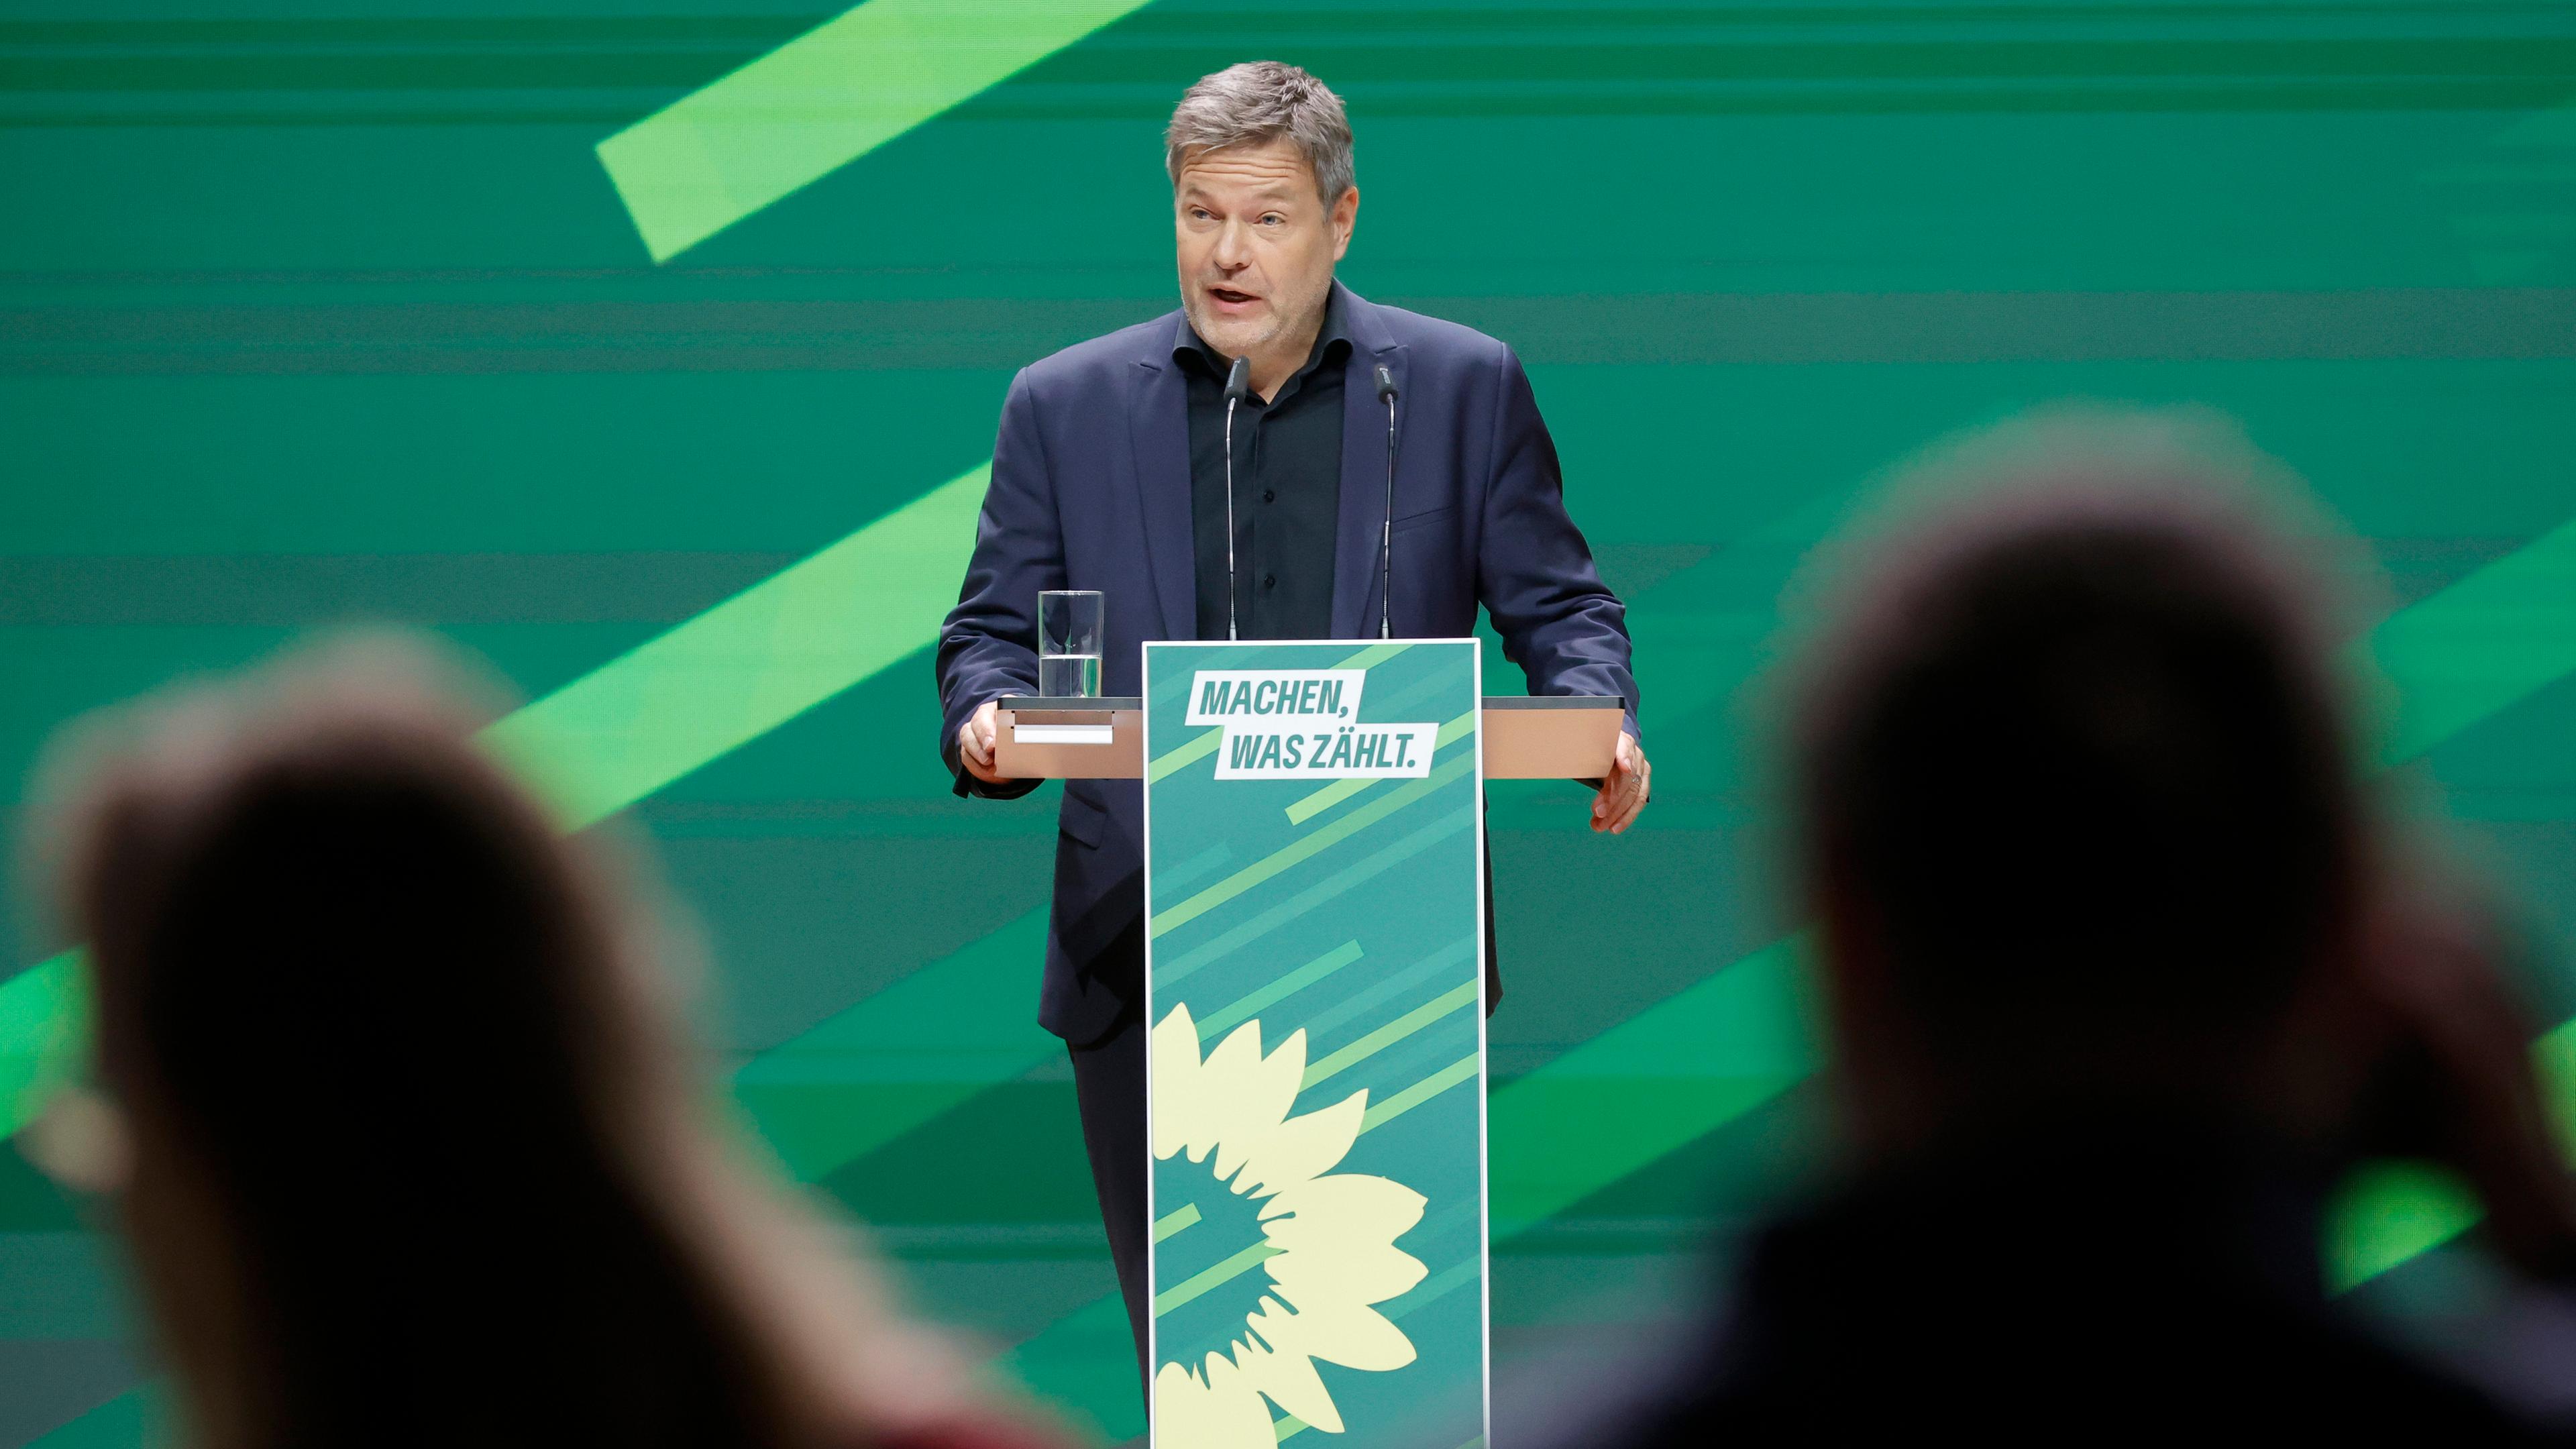 Wirtschaftsminister Robert Habeck auf der Bühne während des Parteitags der Grünen in Karlsruhe.